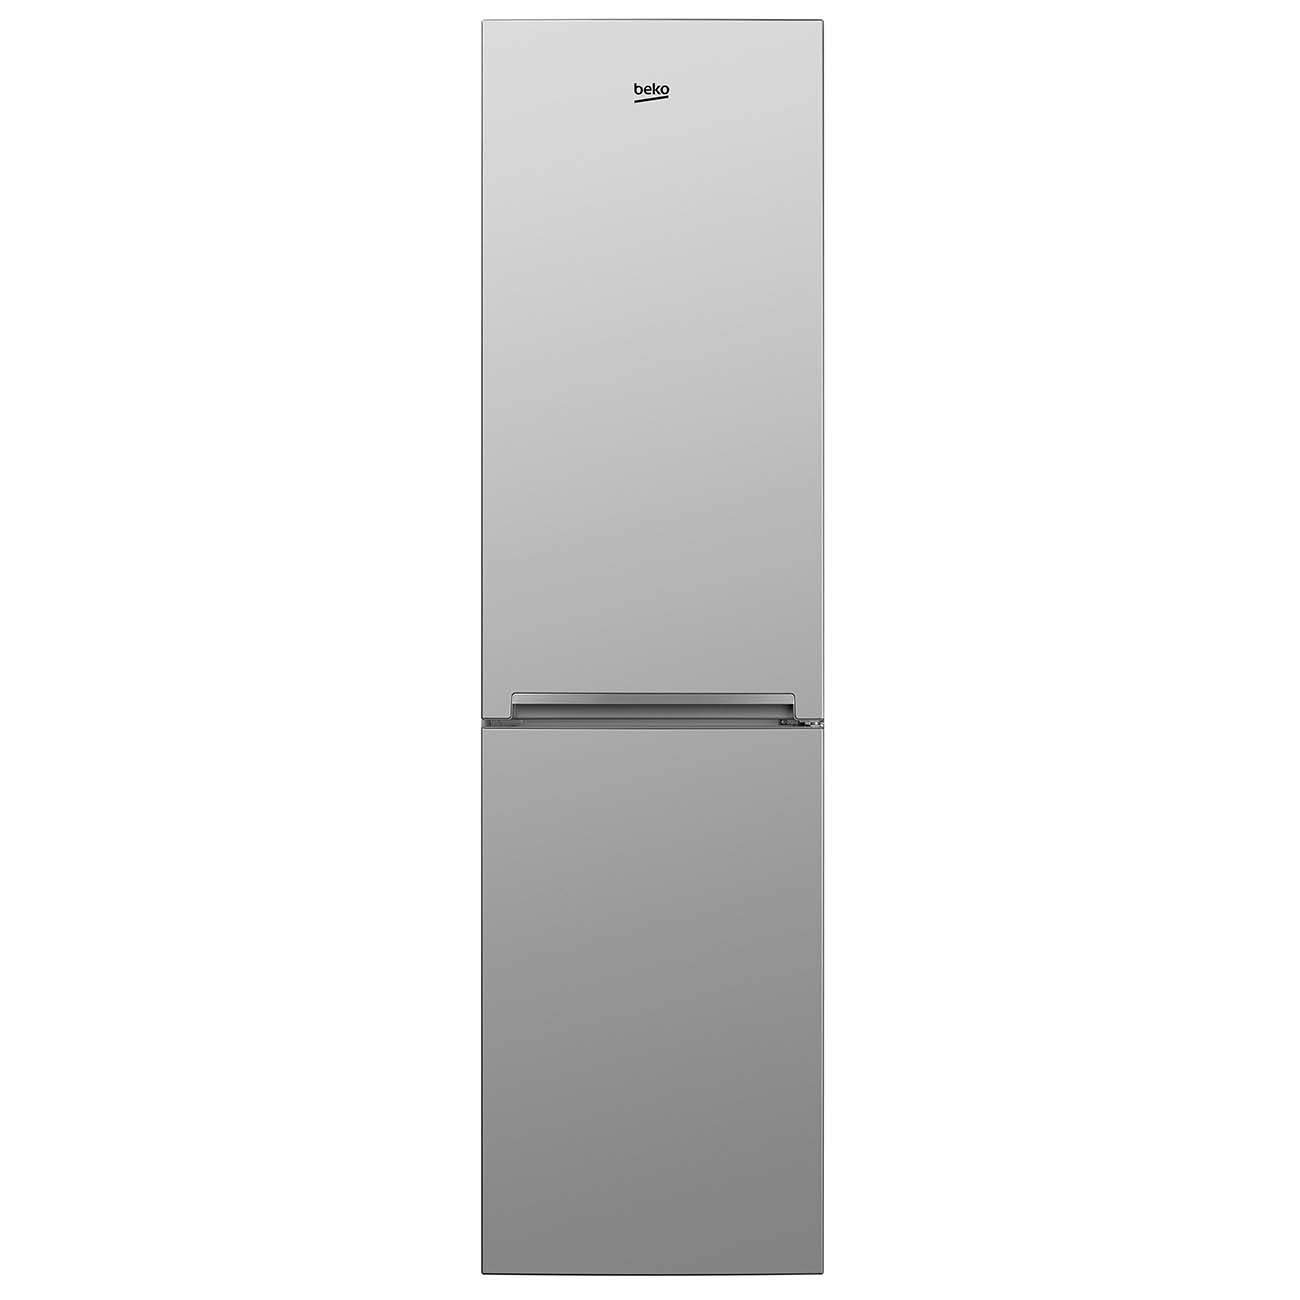 Холодильник Beko CSKDN6335MC0S серебристый, купить в Москве, цены в интернет-магазинах на Мегамаркет